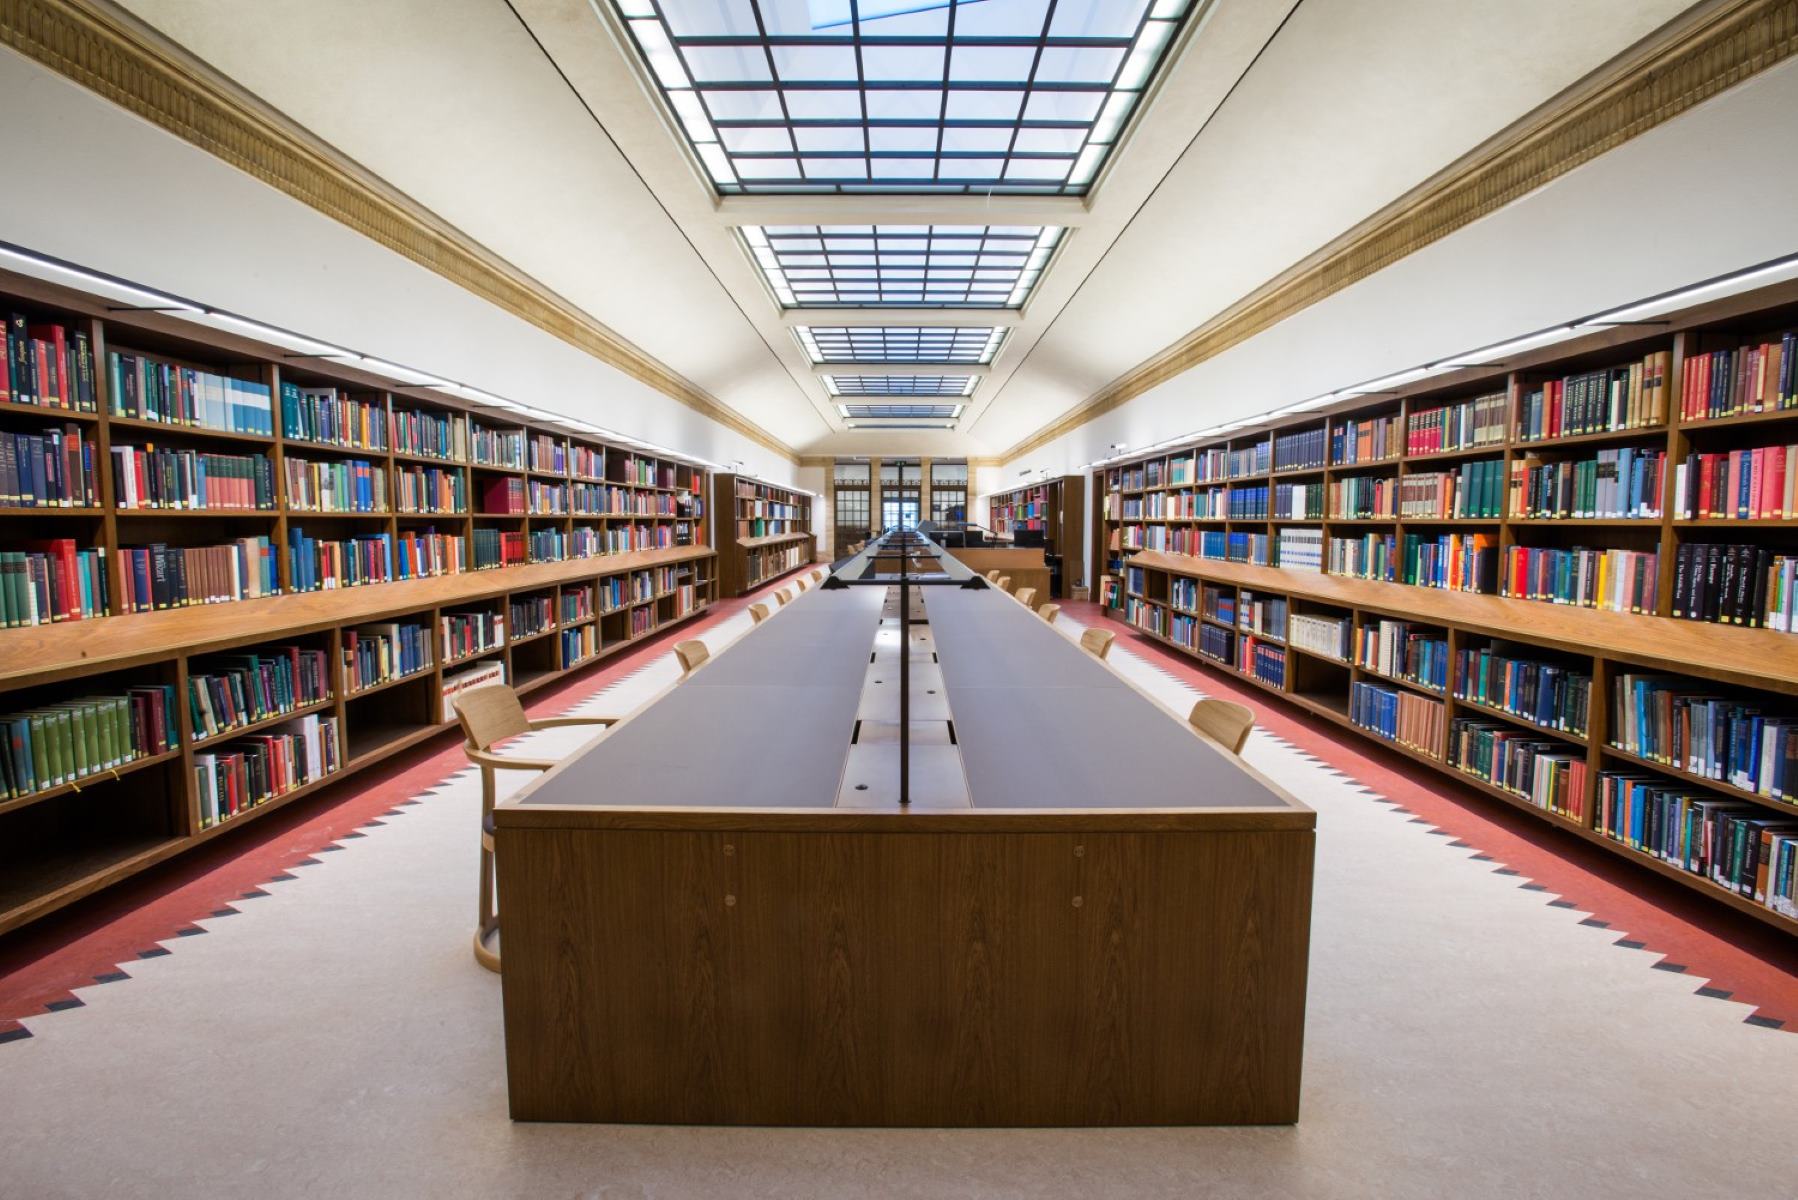 Library sites. Оксфордский университет библиотека. Йельский университет библиотека. Красивая библиотека. Красивые читальные залы.